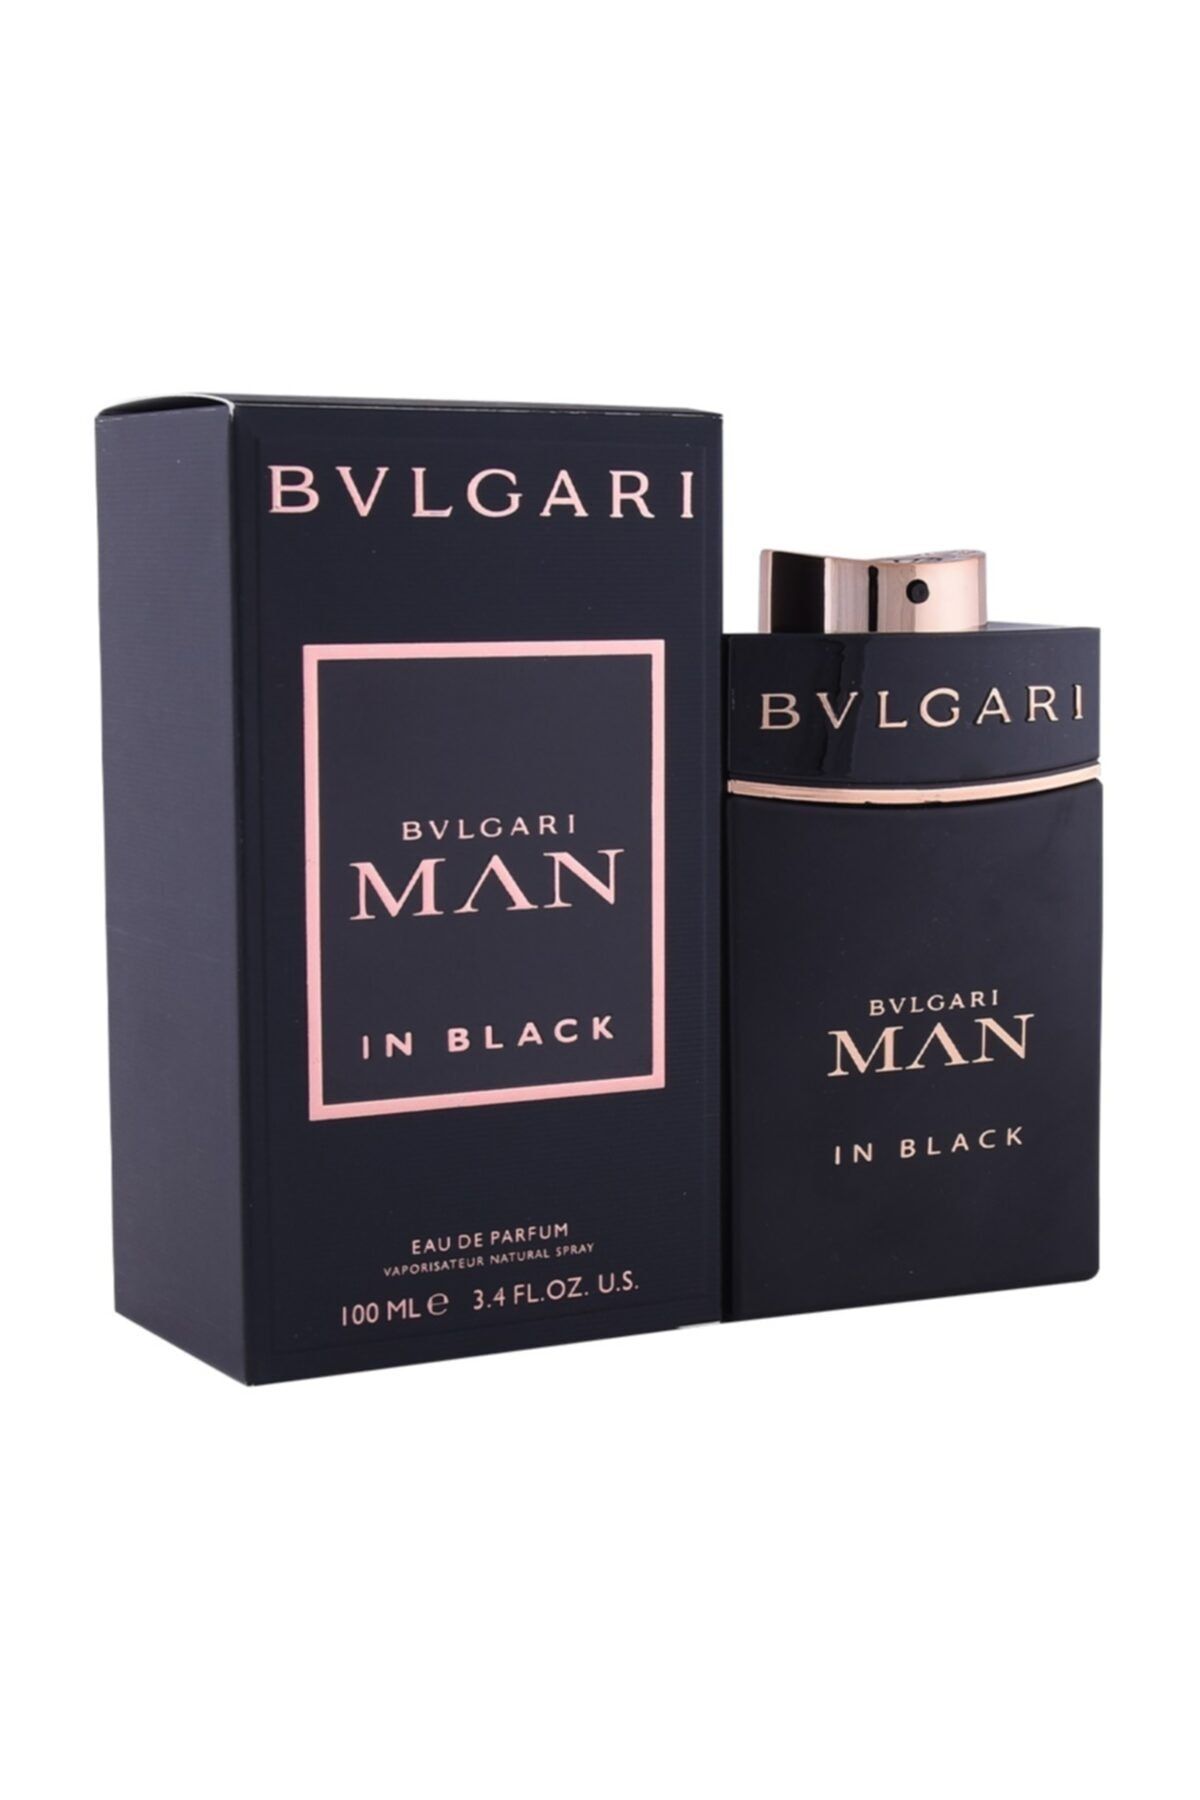 Bvlgari عطر مردانه Man In مشکی ادوپرفیوم 100 ml